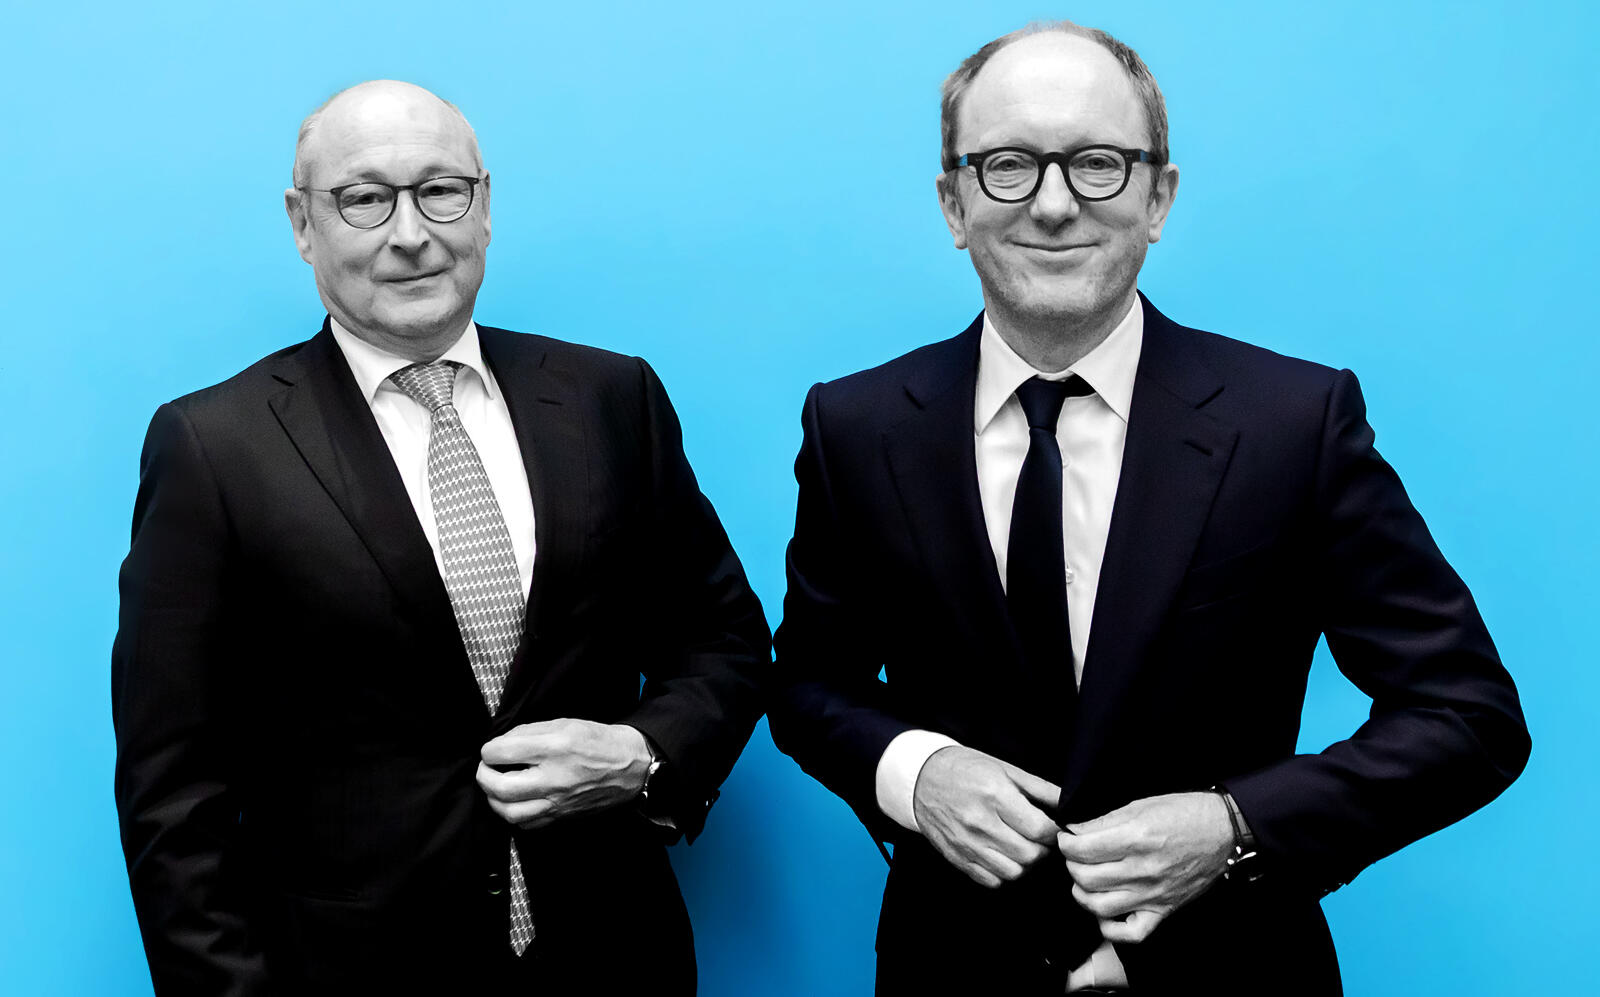 Vonovia CEO Rolf Buch and Deutsche Wohnen CEO Michael Zahn at a press conference earlier this week regarding the merger. (Getty)